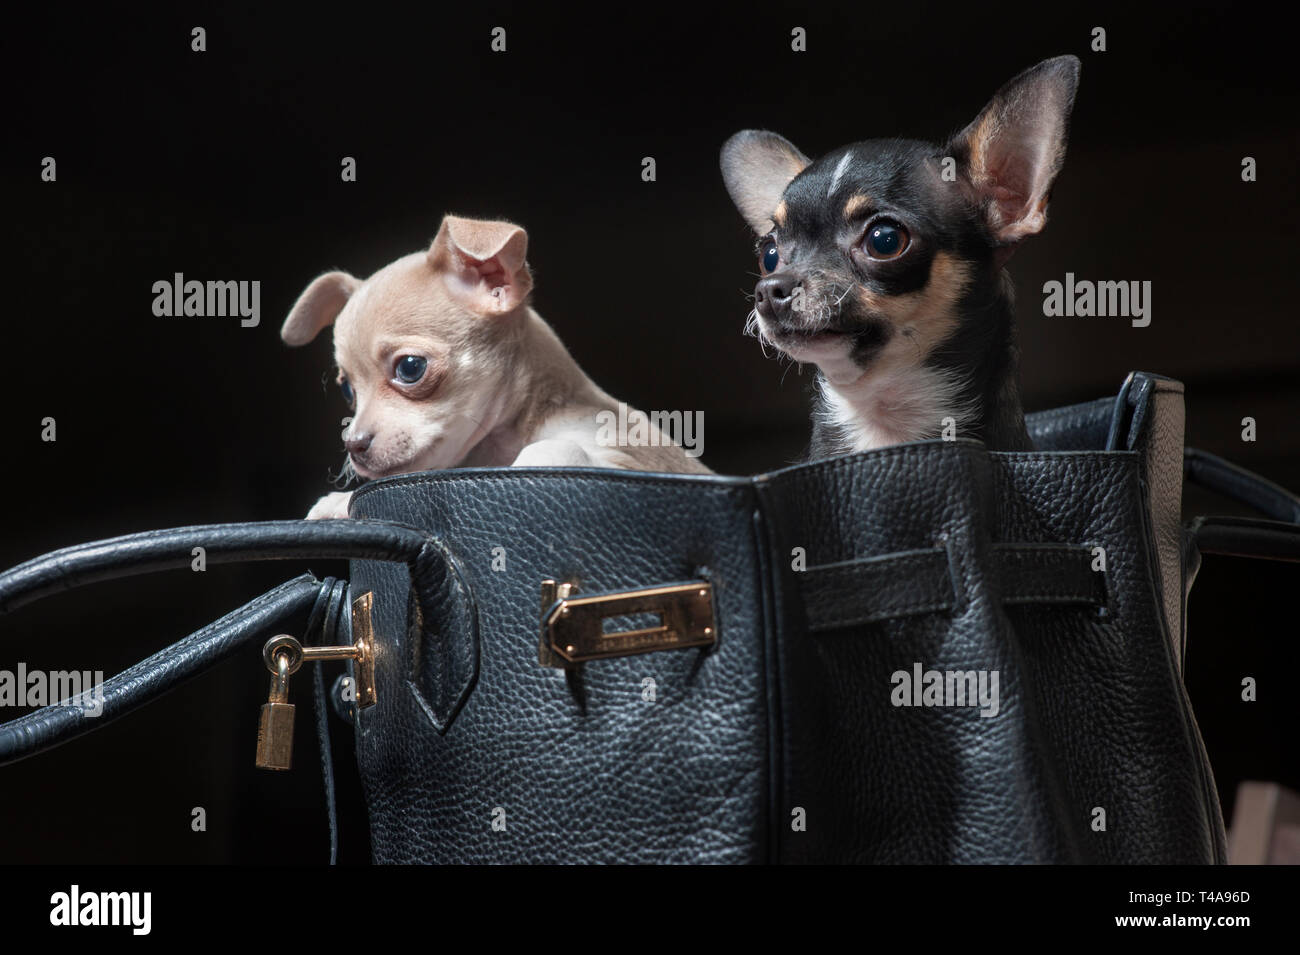 Zwei kleine Chihuahua hunde in einem schwarzen Designer Handtasche  Stockfotografie - Alamy